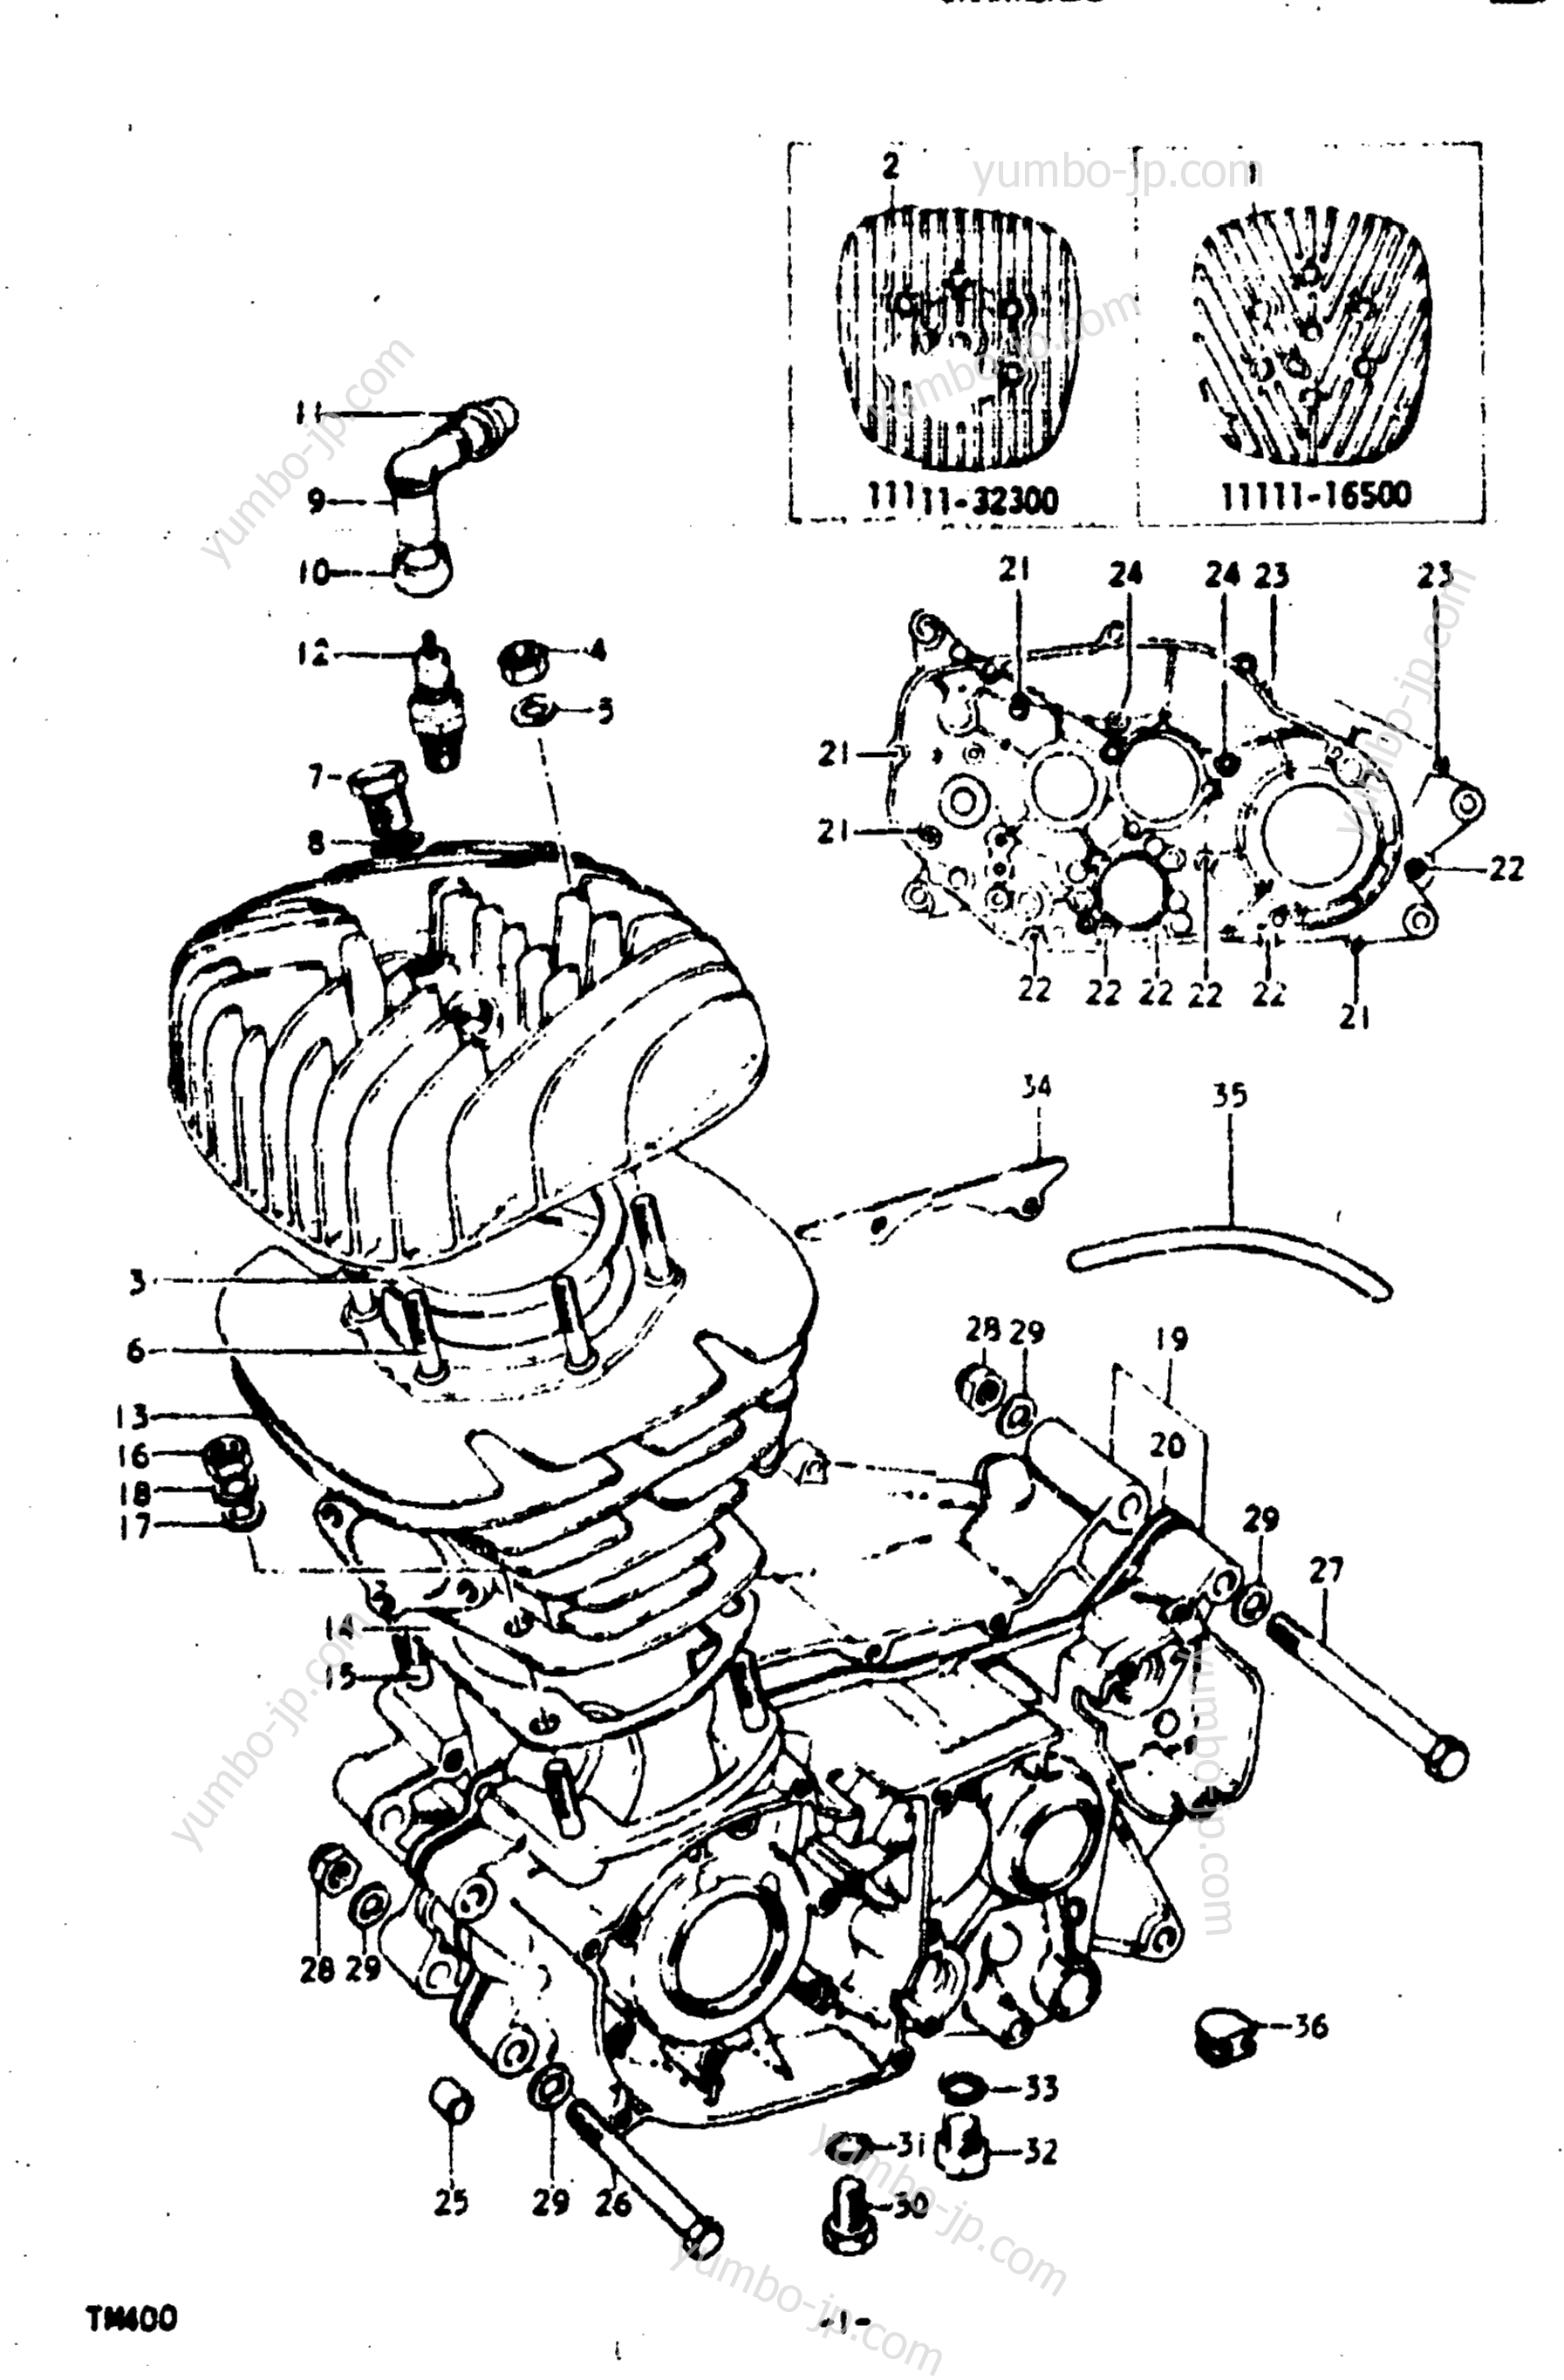 Cylinder - Crankcase for motorcycles SUZUKI TM400 1975 year